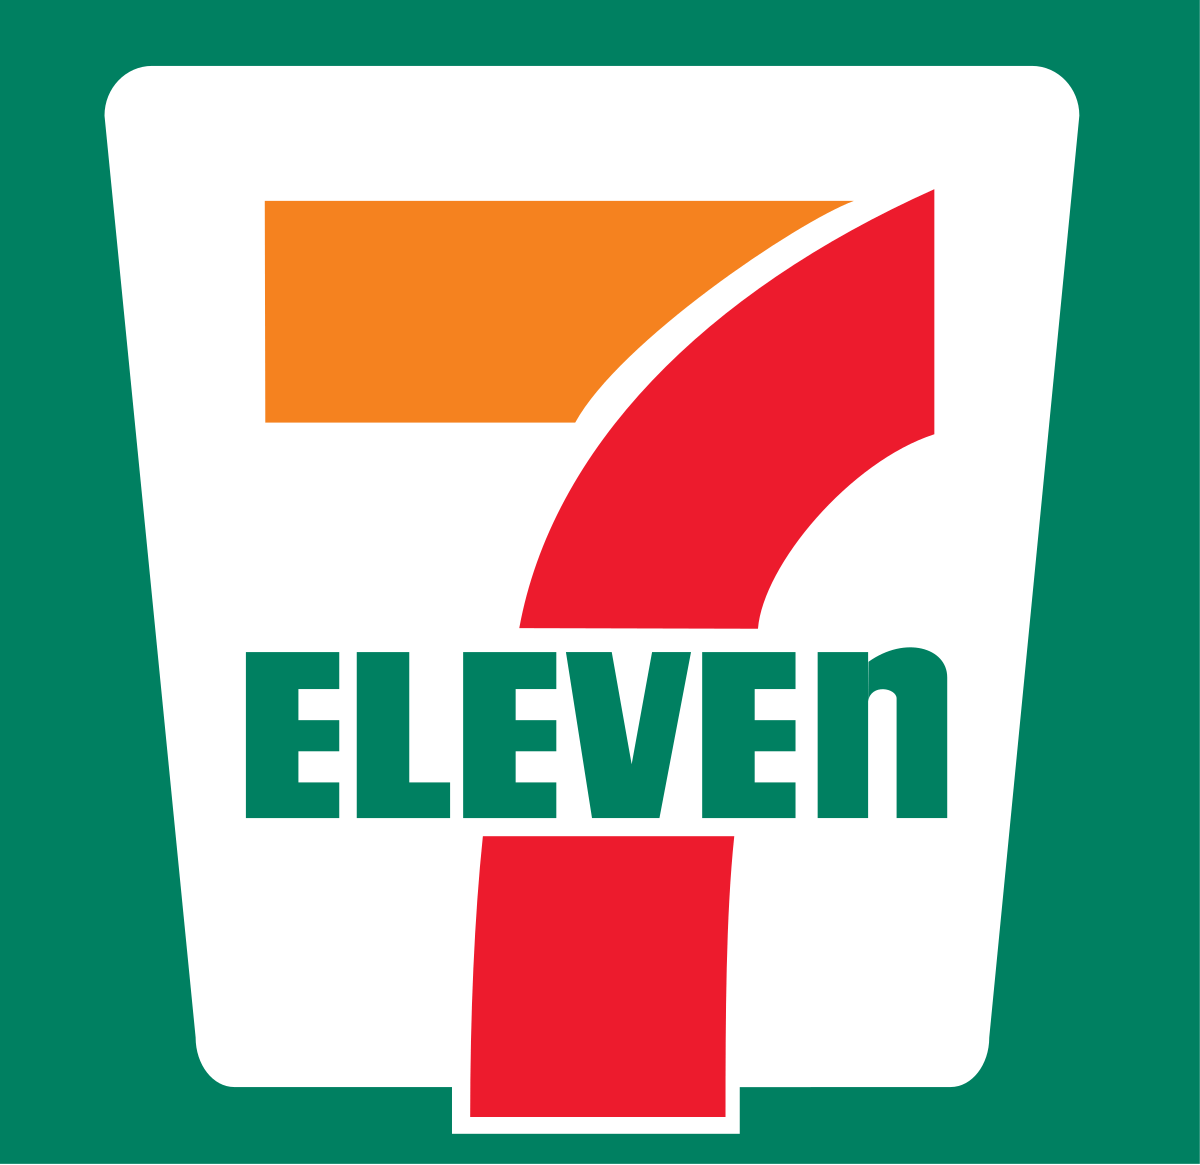 American Retail Company Logo - 7-Eleven